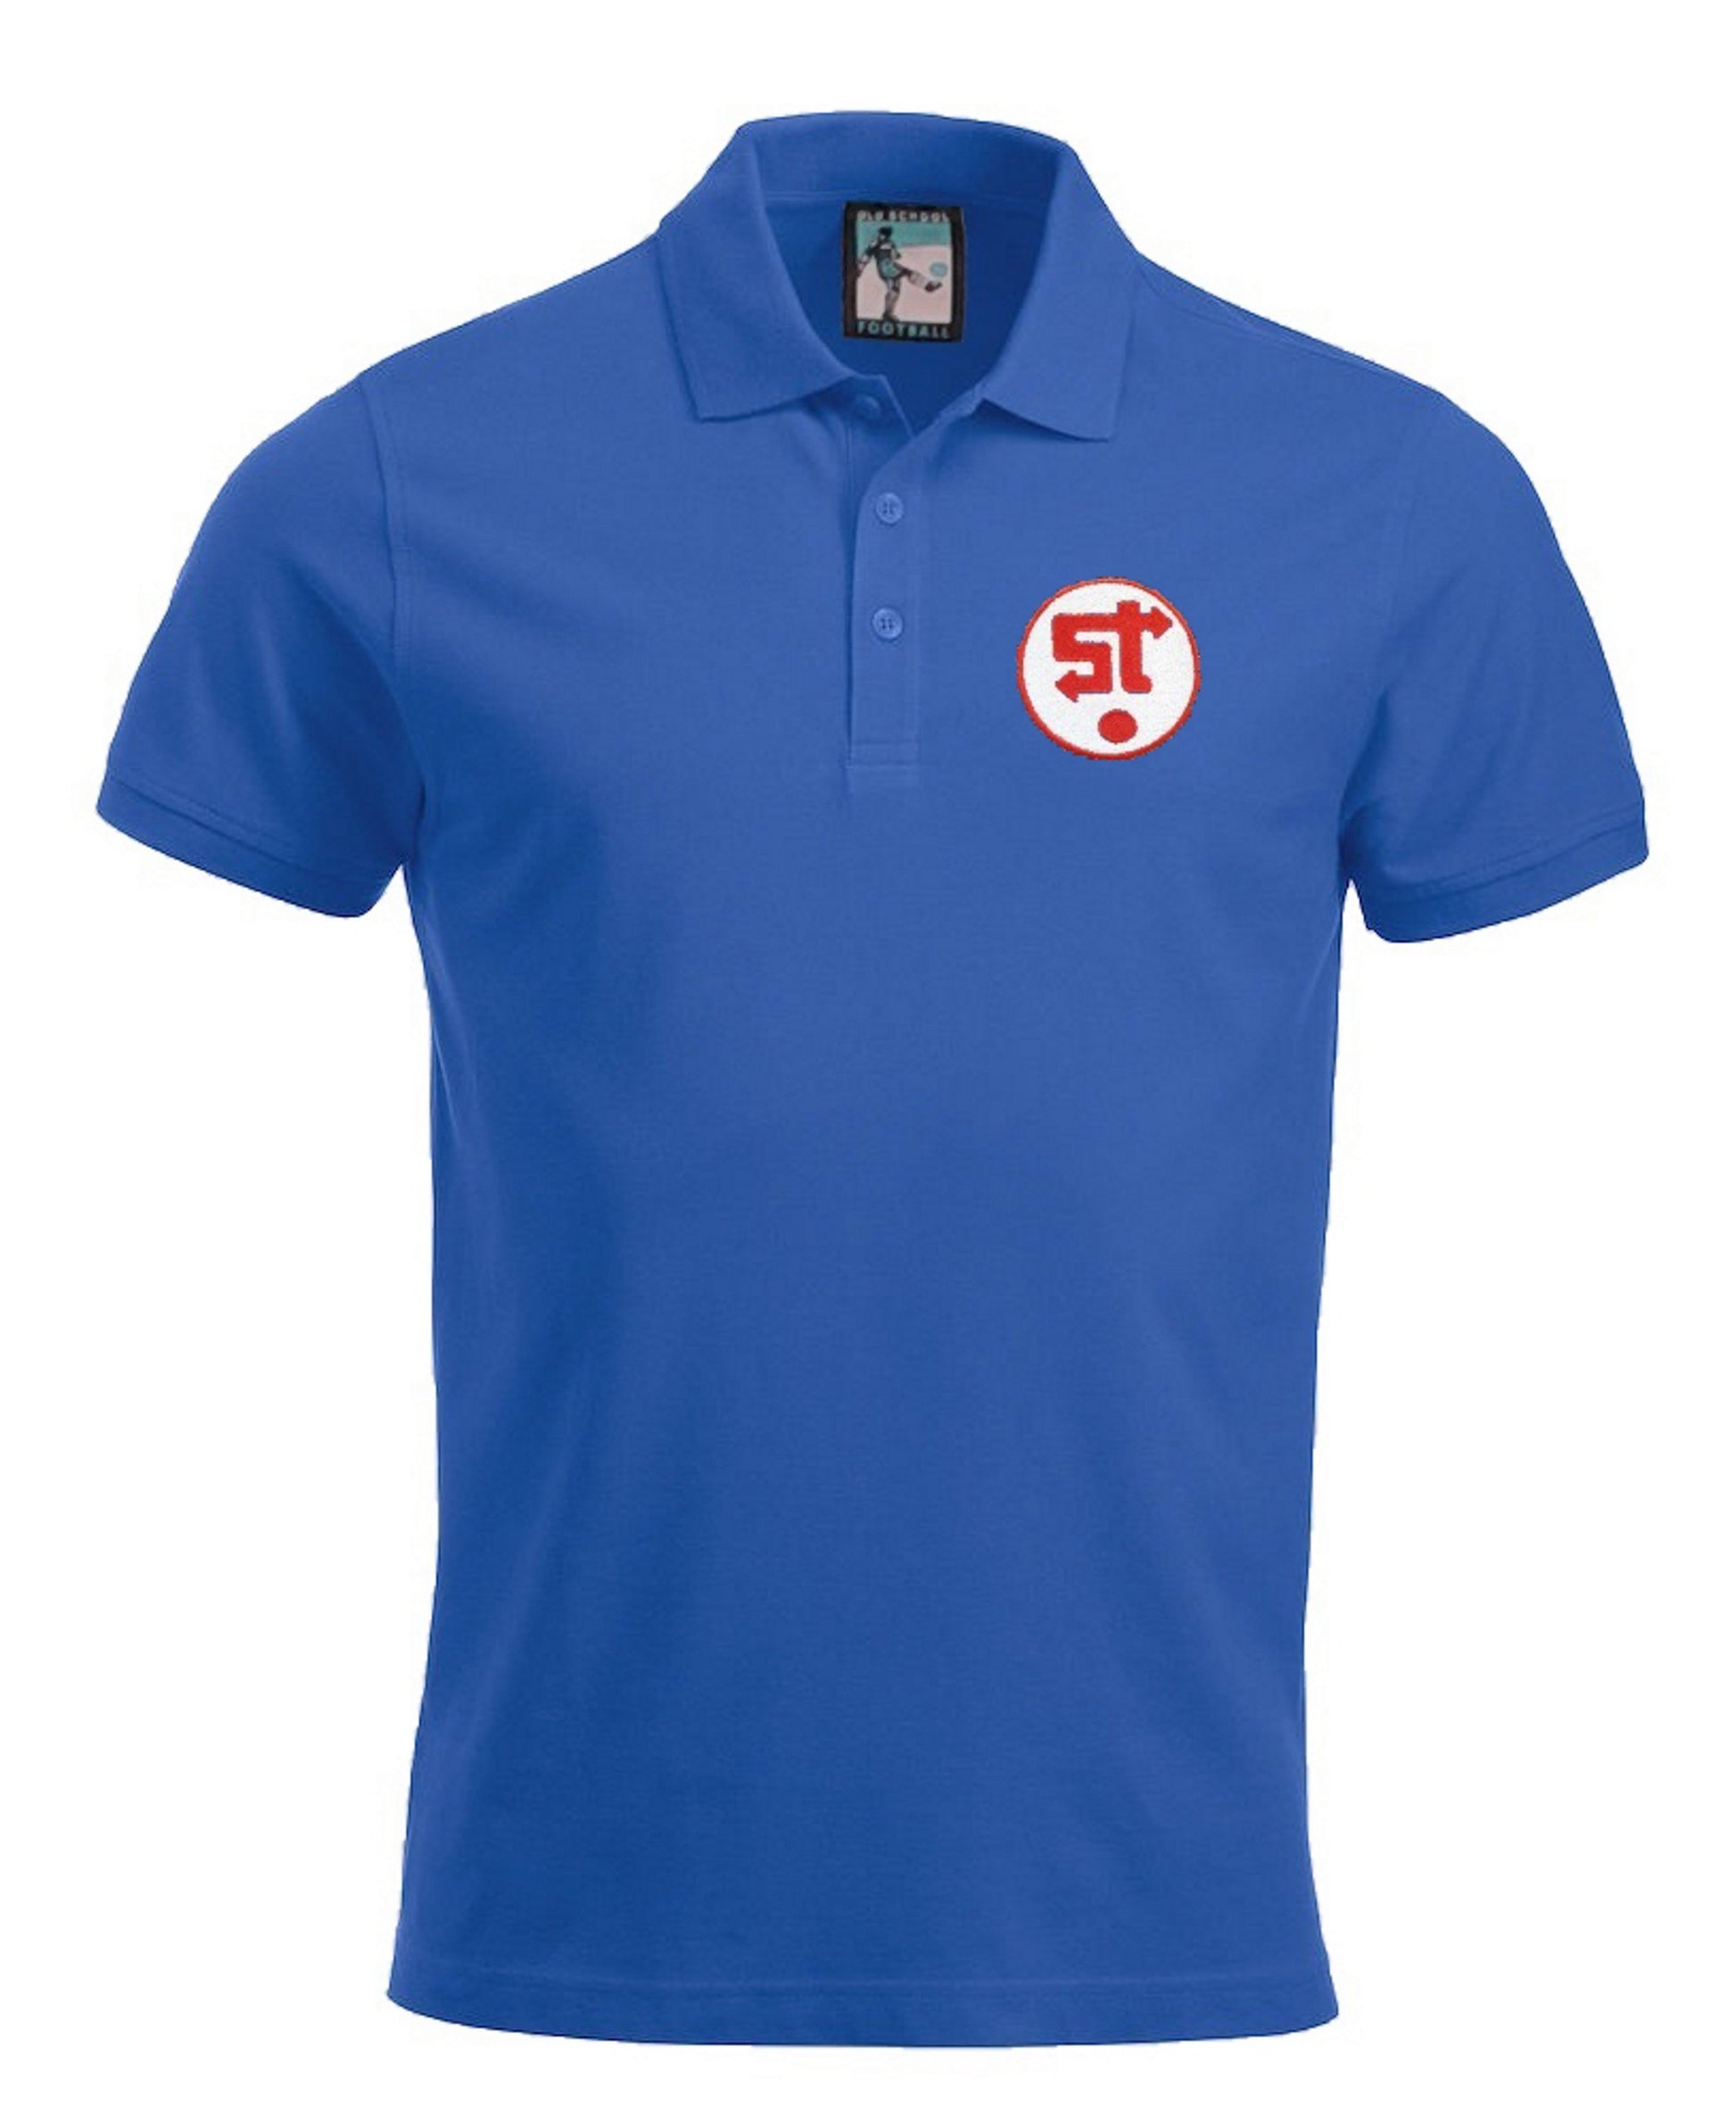 Swindon Town Retro 1980s Football Polo Shirt - Polo